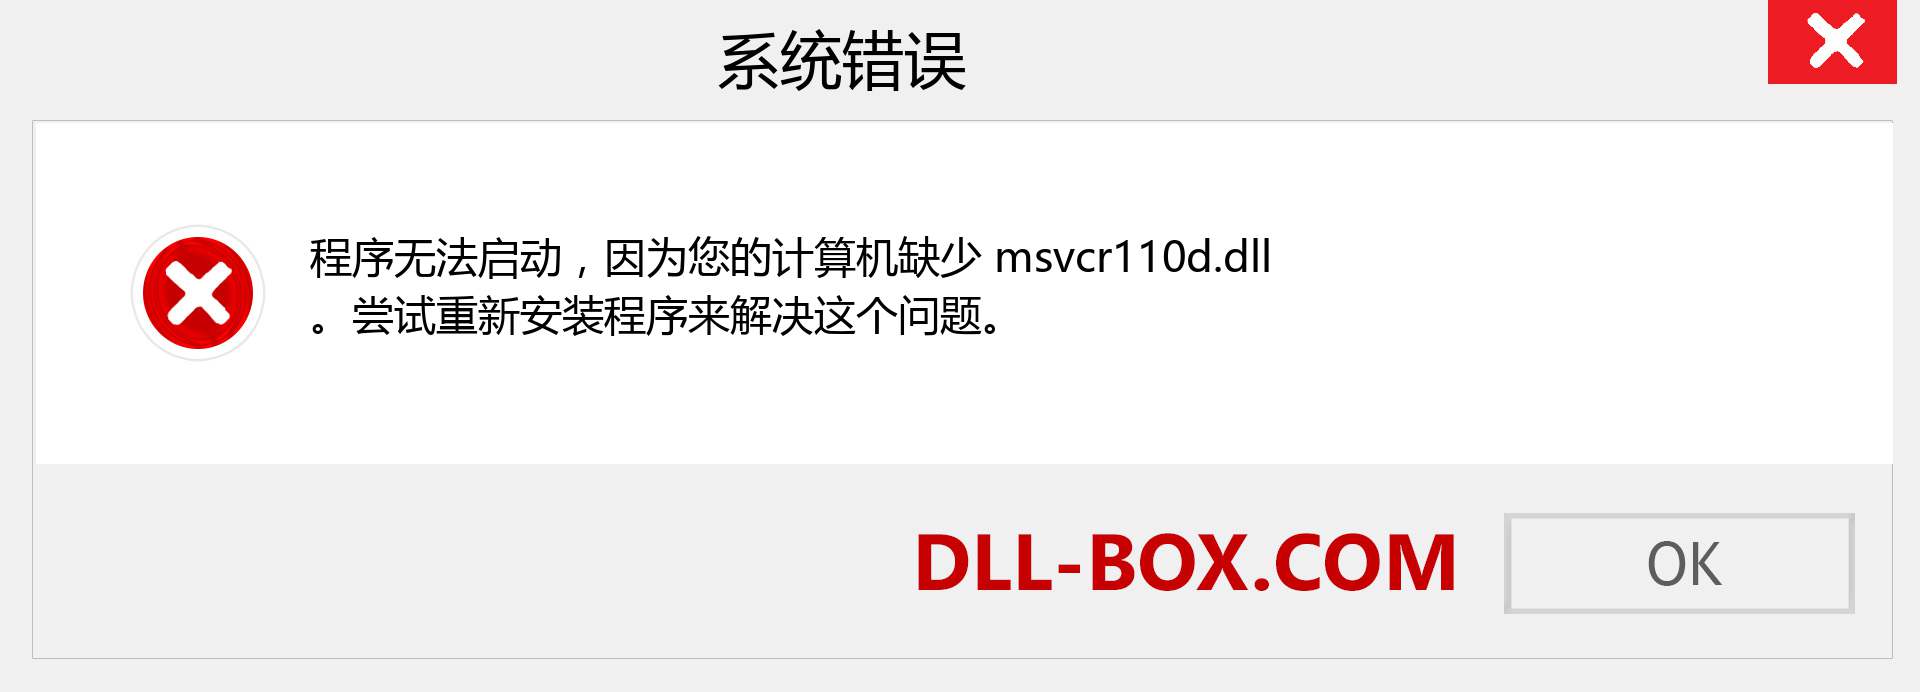 msvcr110d.dll 文件丢失？。 适用于 Windows 7、8、10 的下载 - 修复 Windows、照片、图像上的 msvcr110d dll 丢失错误